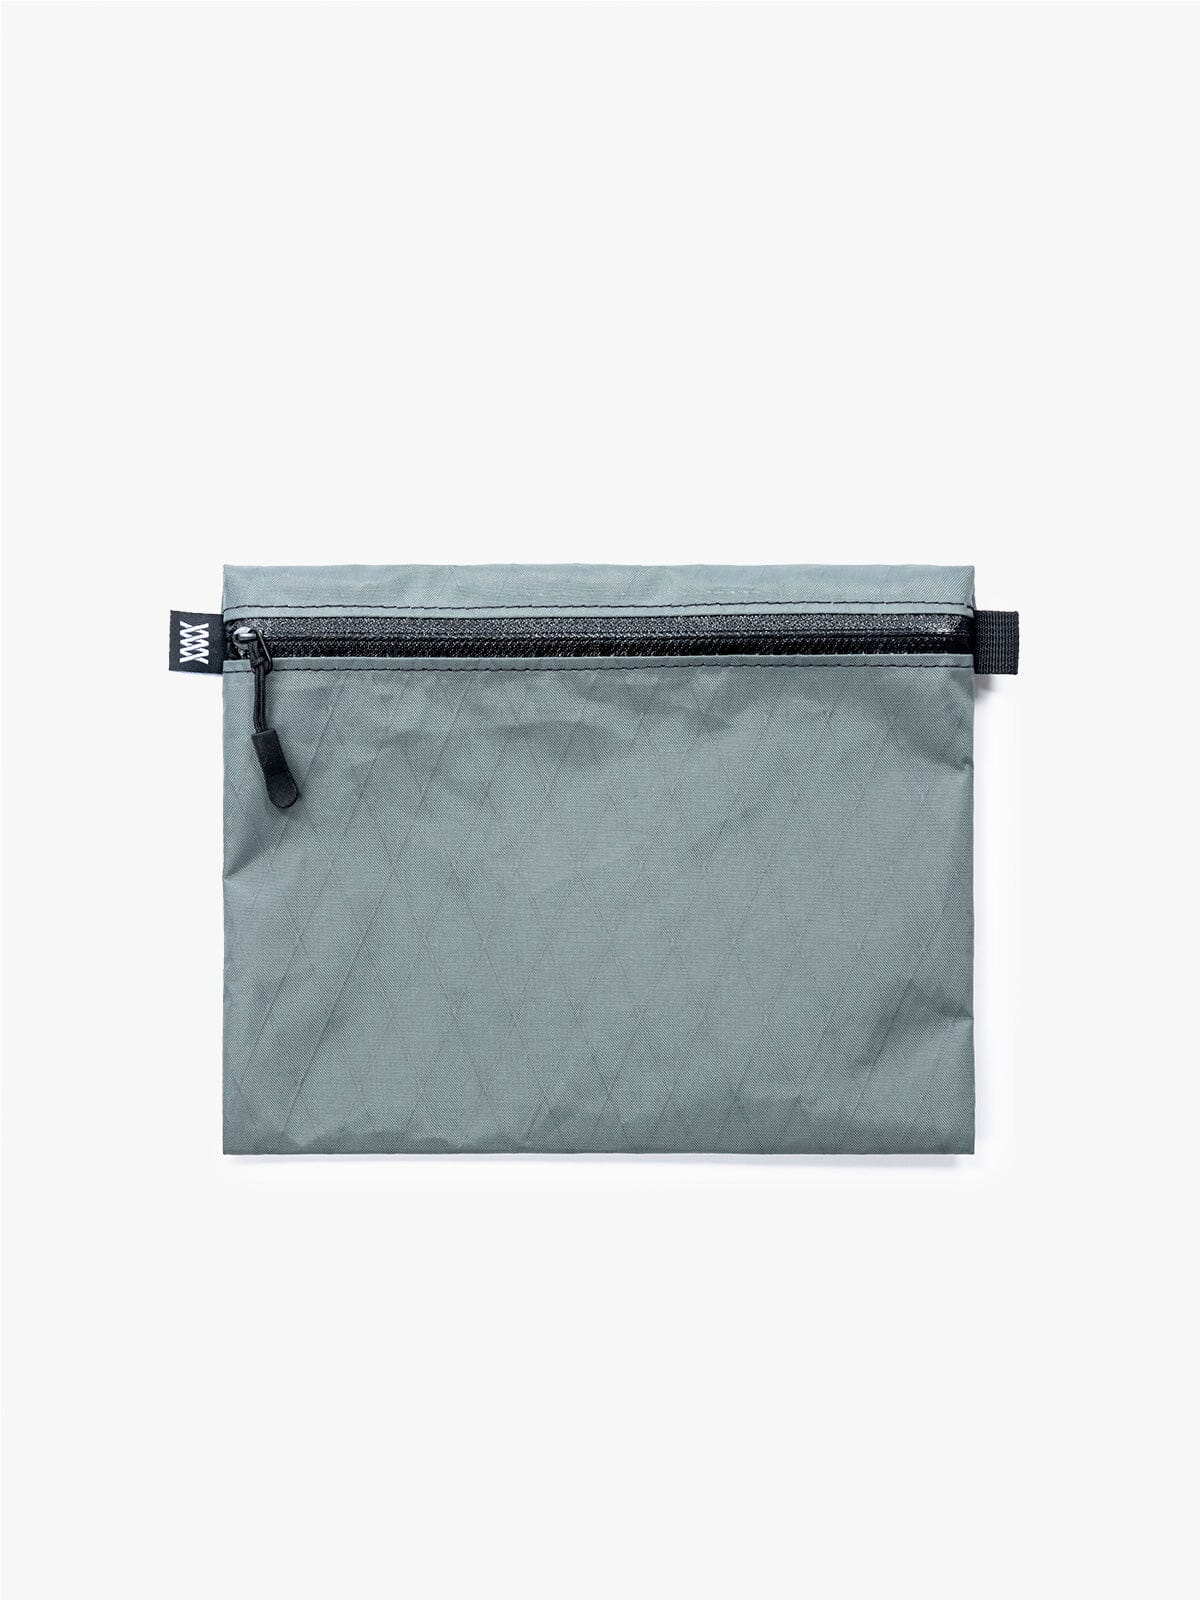 VX Wallet & Utility Pouch by Mission Workshop - Bolsas impermeables y ropa técnica - San Francisco y Los Ángeles - Fabricado para resistir - Garantizado para siempre